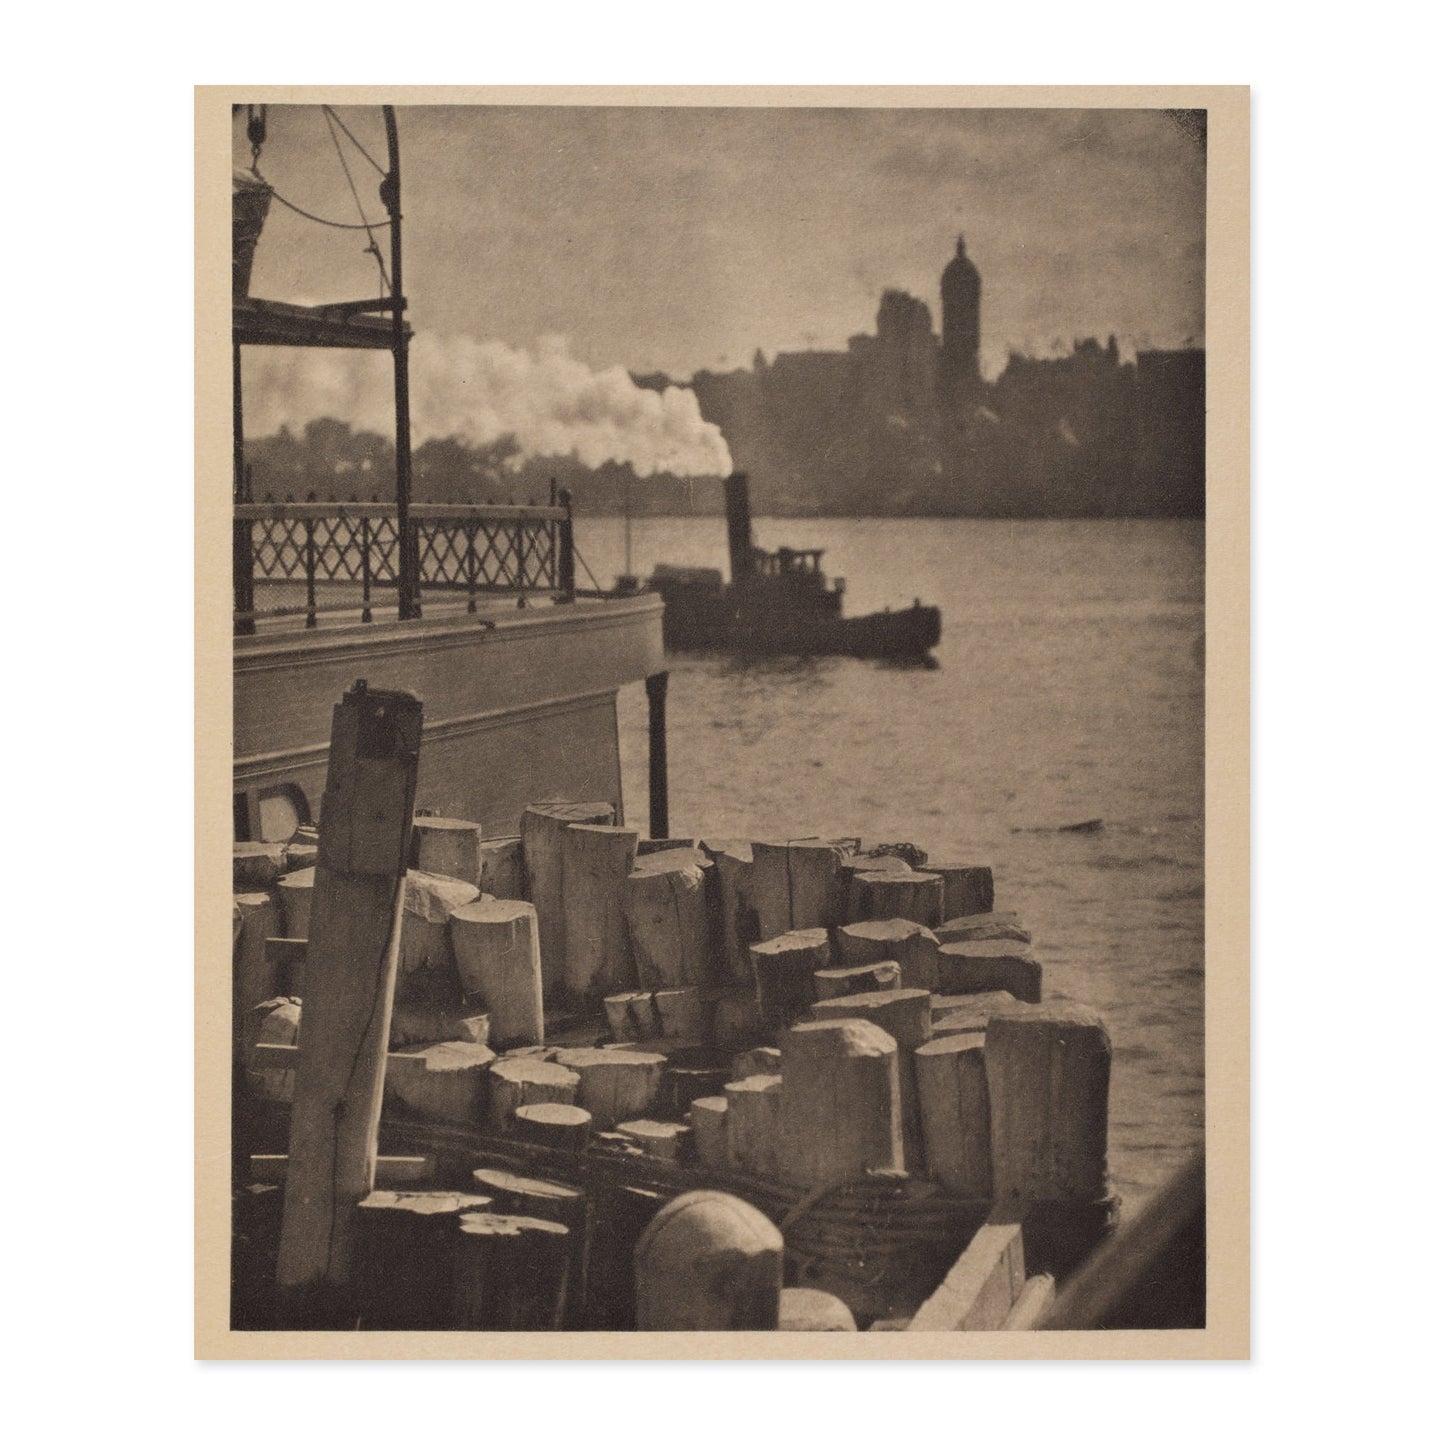 Alfred Stieglitz, The City Across the River 1910